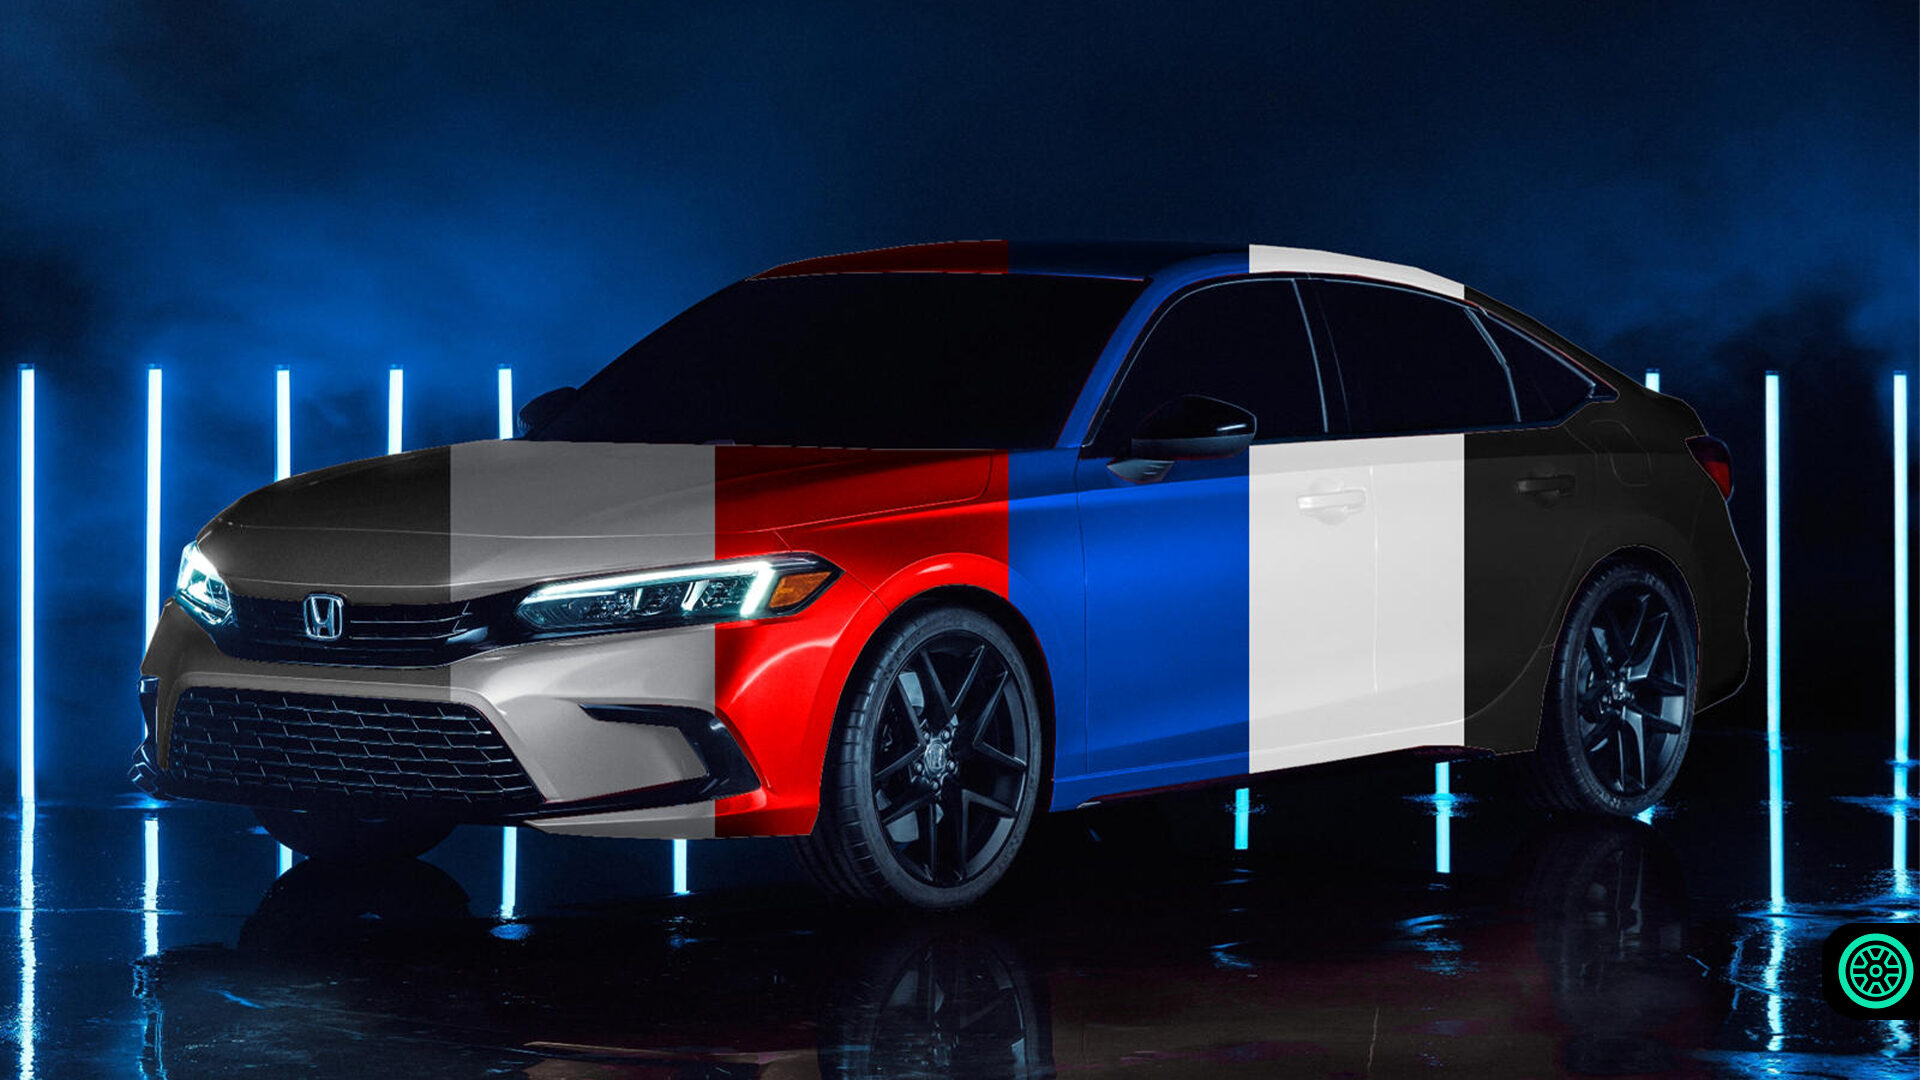 2022 Honda Civic sızan renk seçenekleri ile karşımızda 11